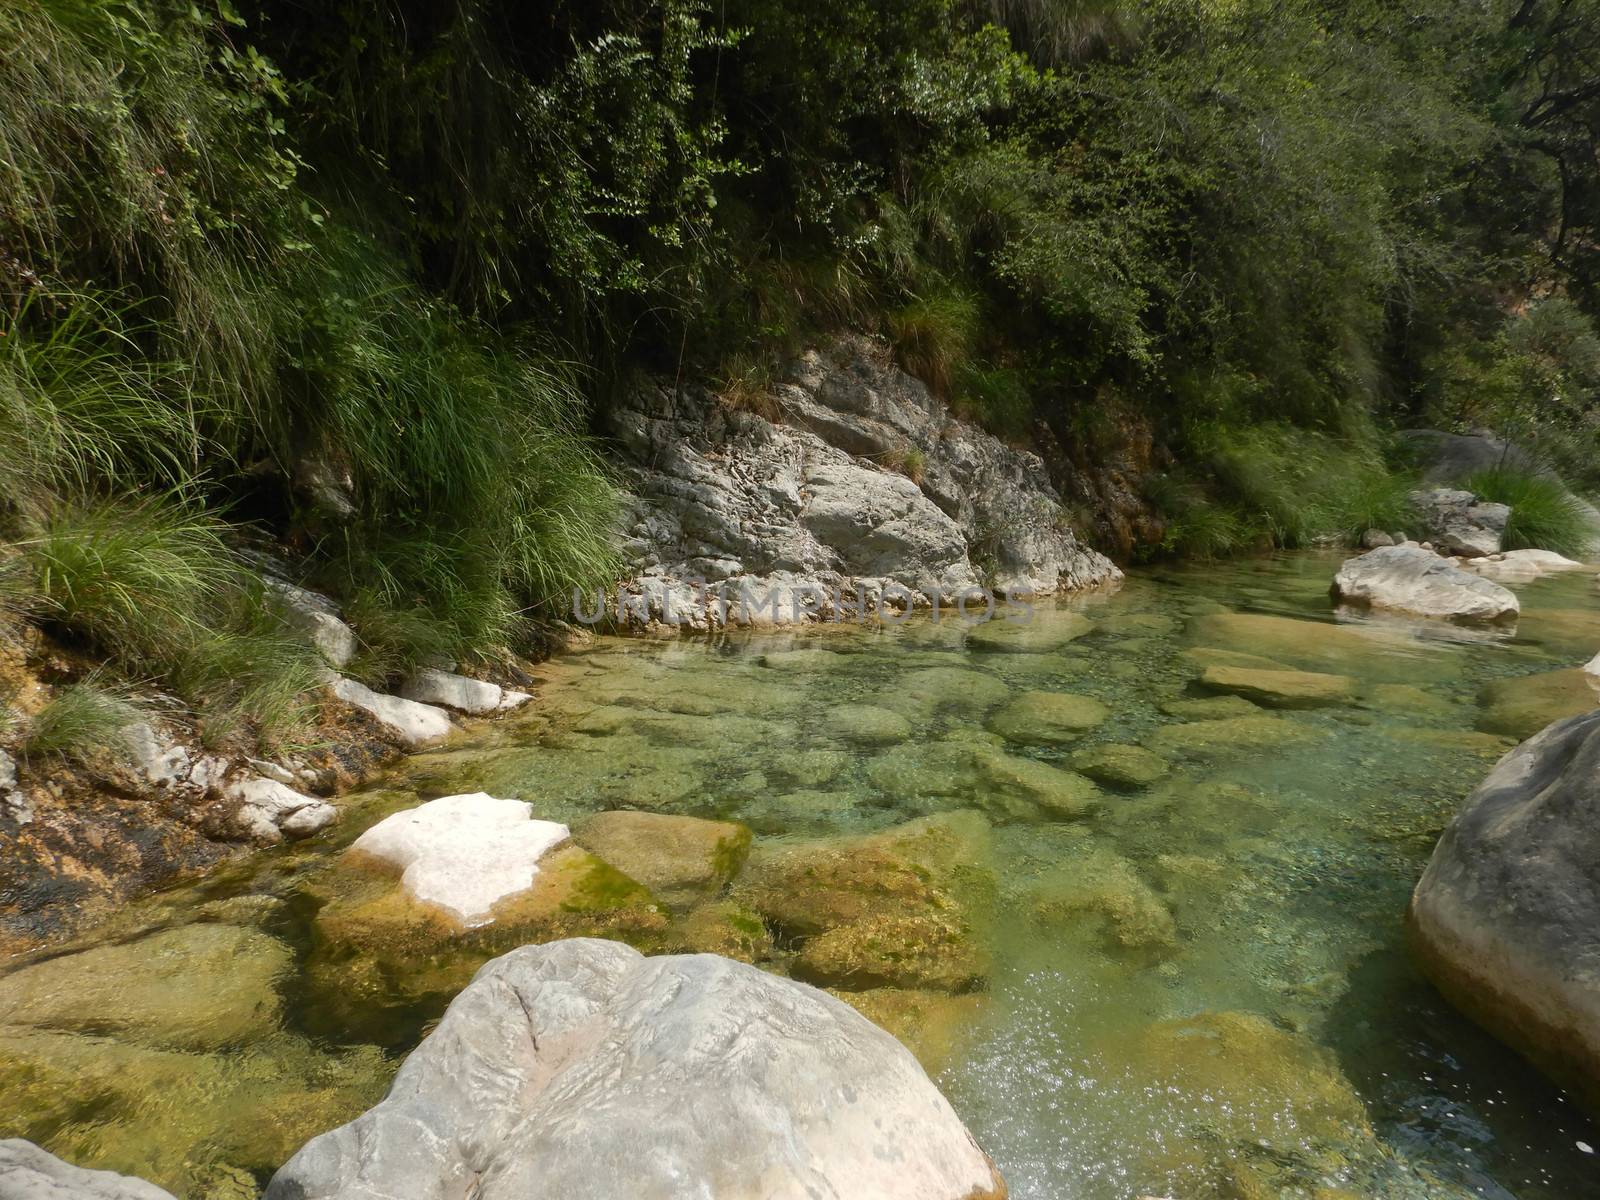 Creek Rio Barbaira in Rocchetta Nervina, Liguria - Italy by cosca